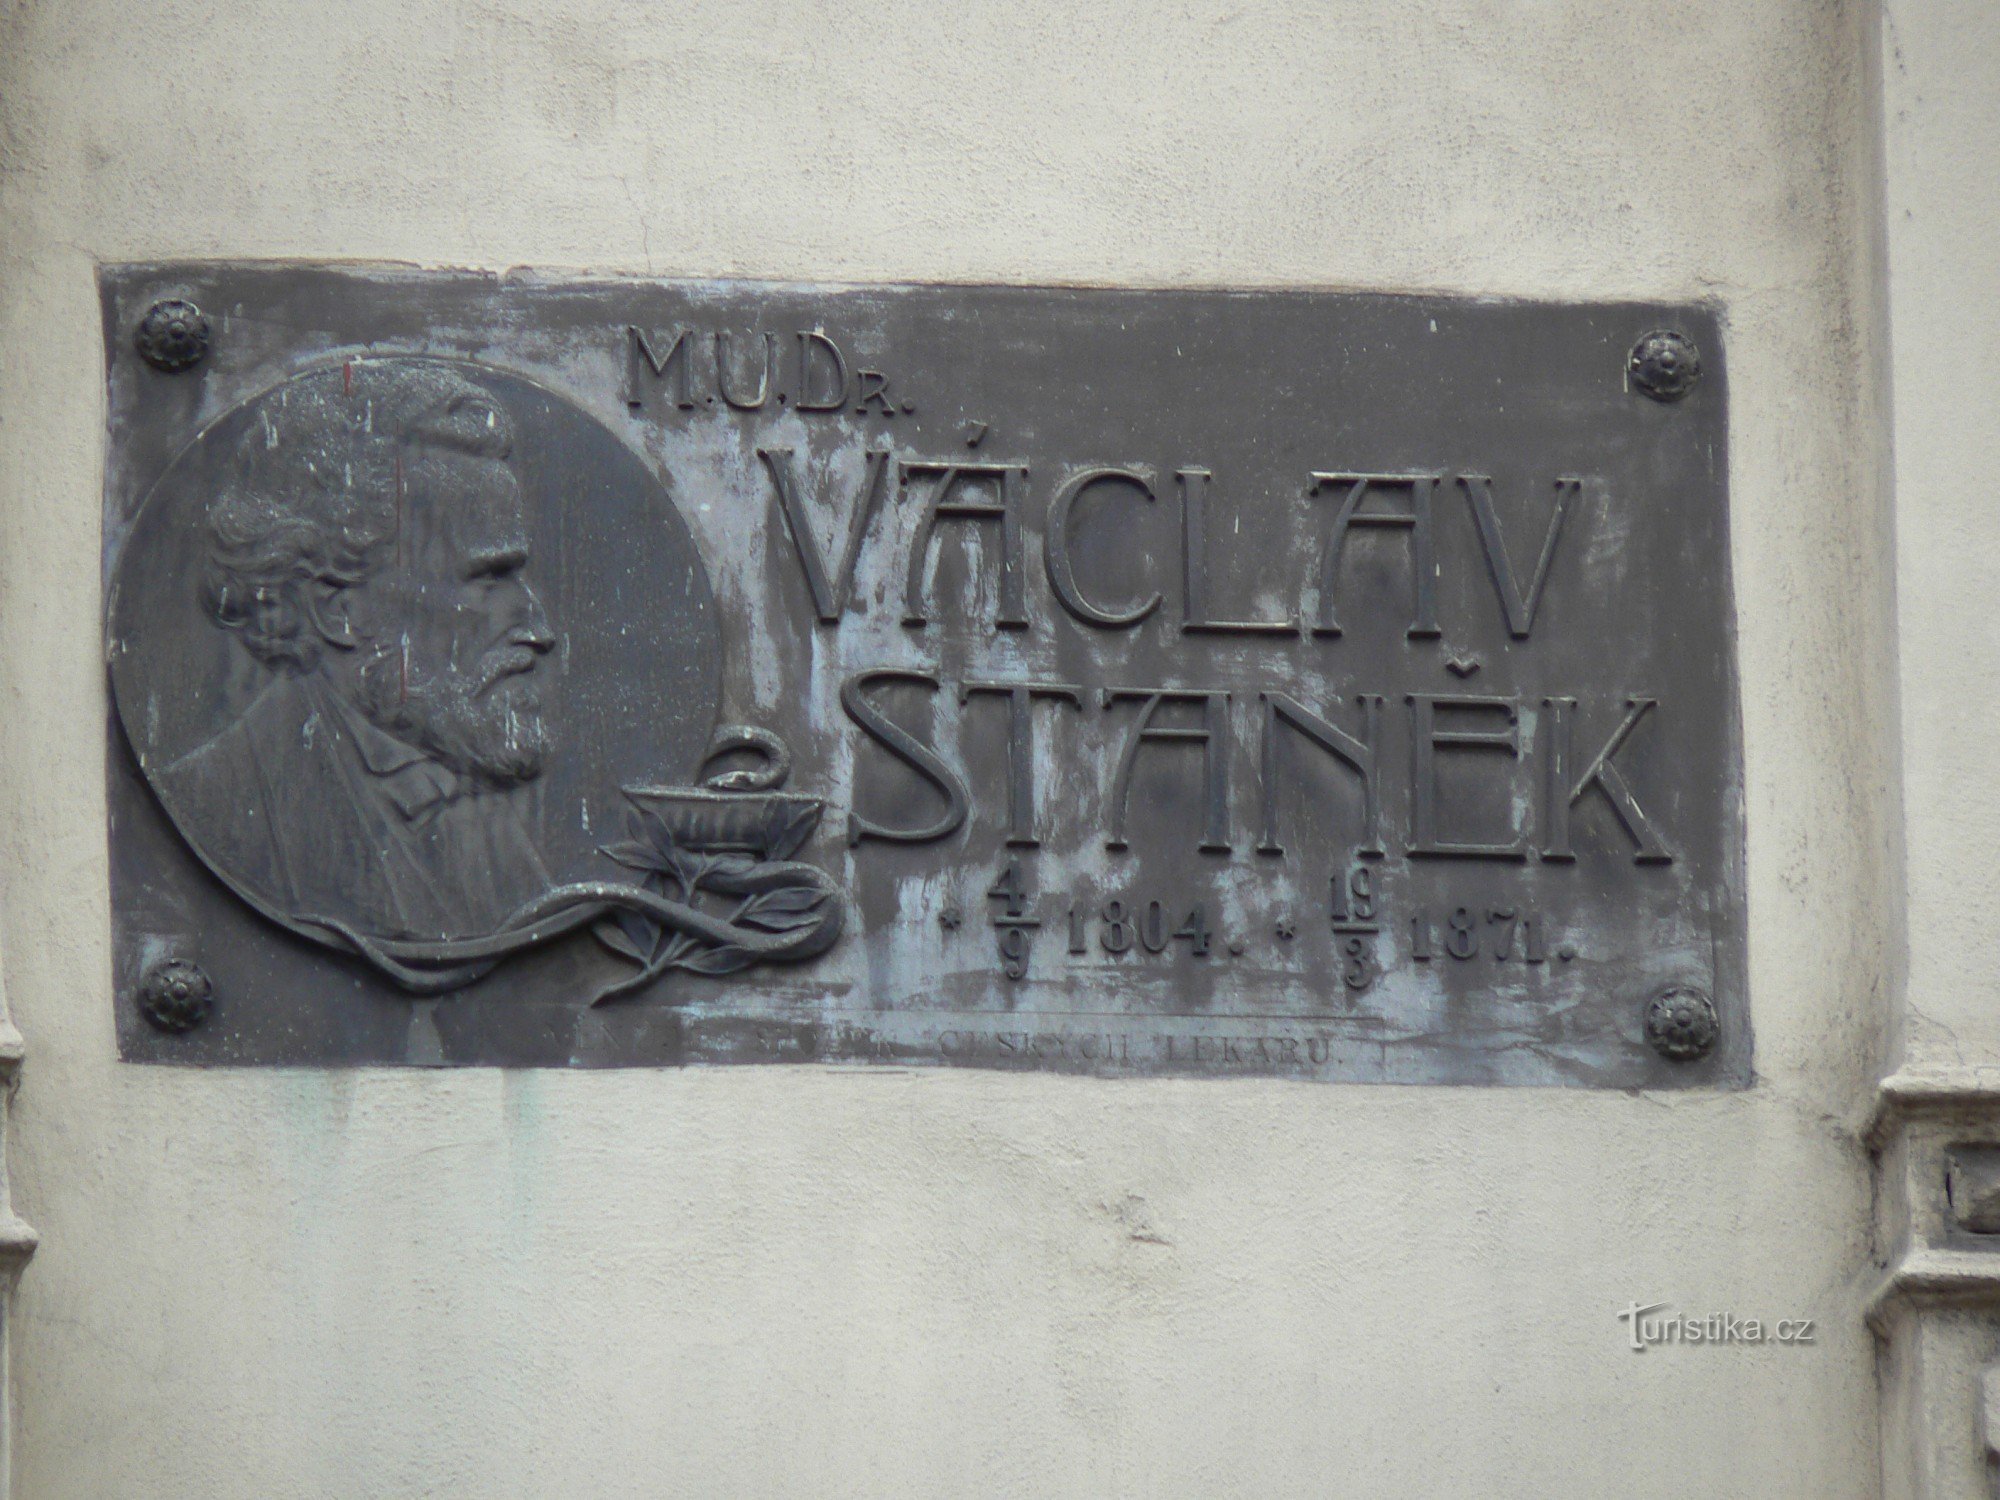 Spominska plošča MUDr. Václav Stanek